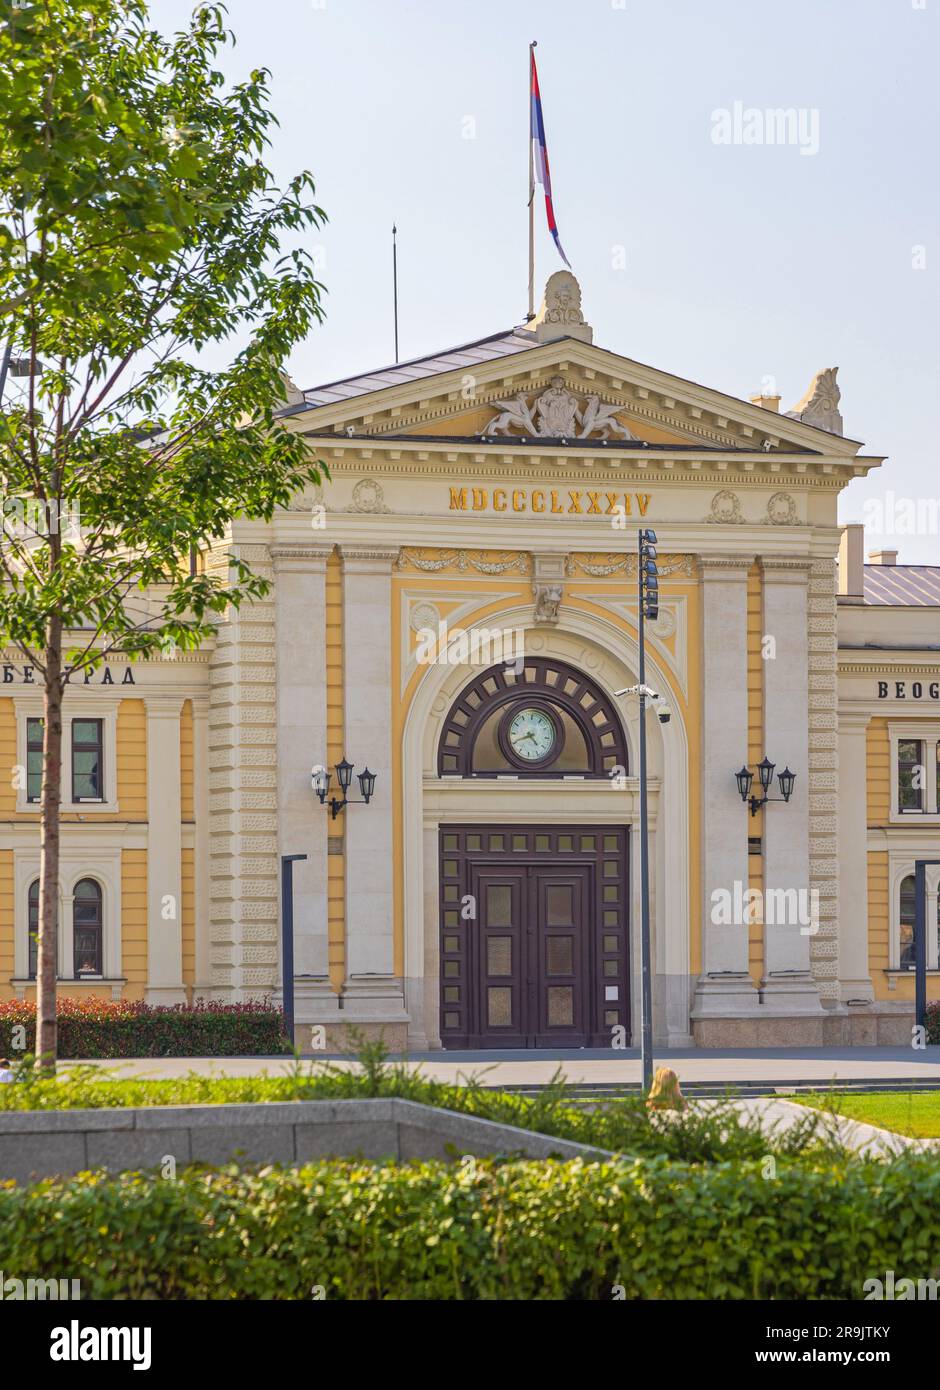 Belgrado, Serbia - 19 giugno 2023: Stazione ferroviaria in disuso costruita nel 1884, monumento storico in stile architettonico neoclassico nella capitale. Foto Stock